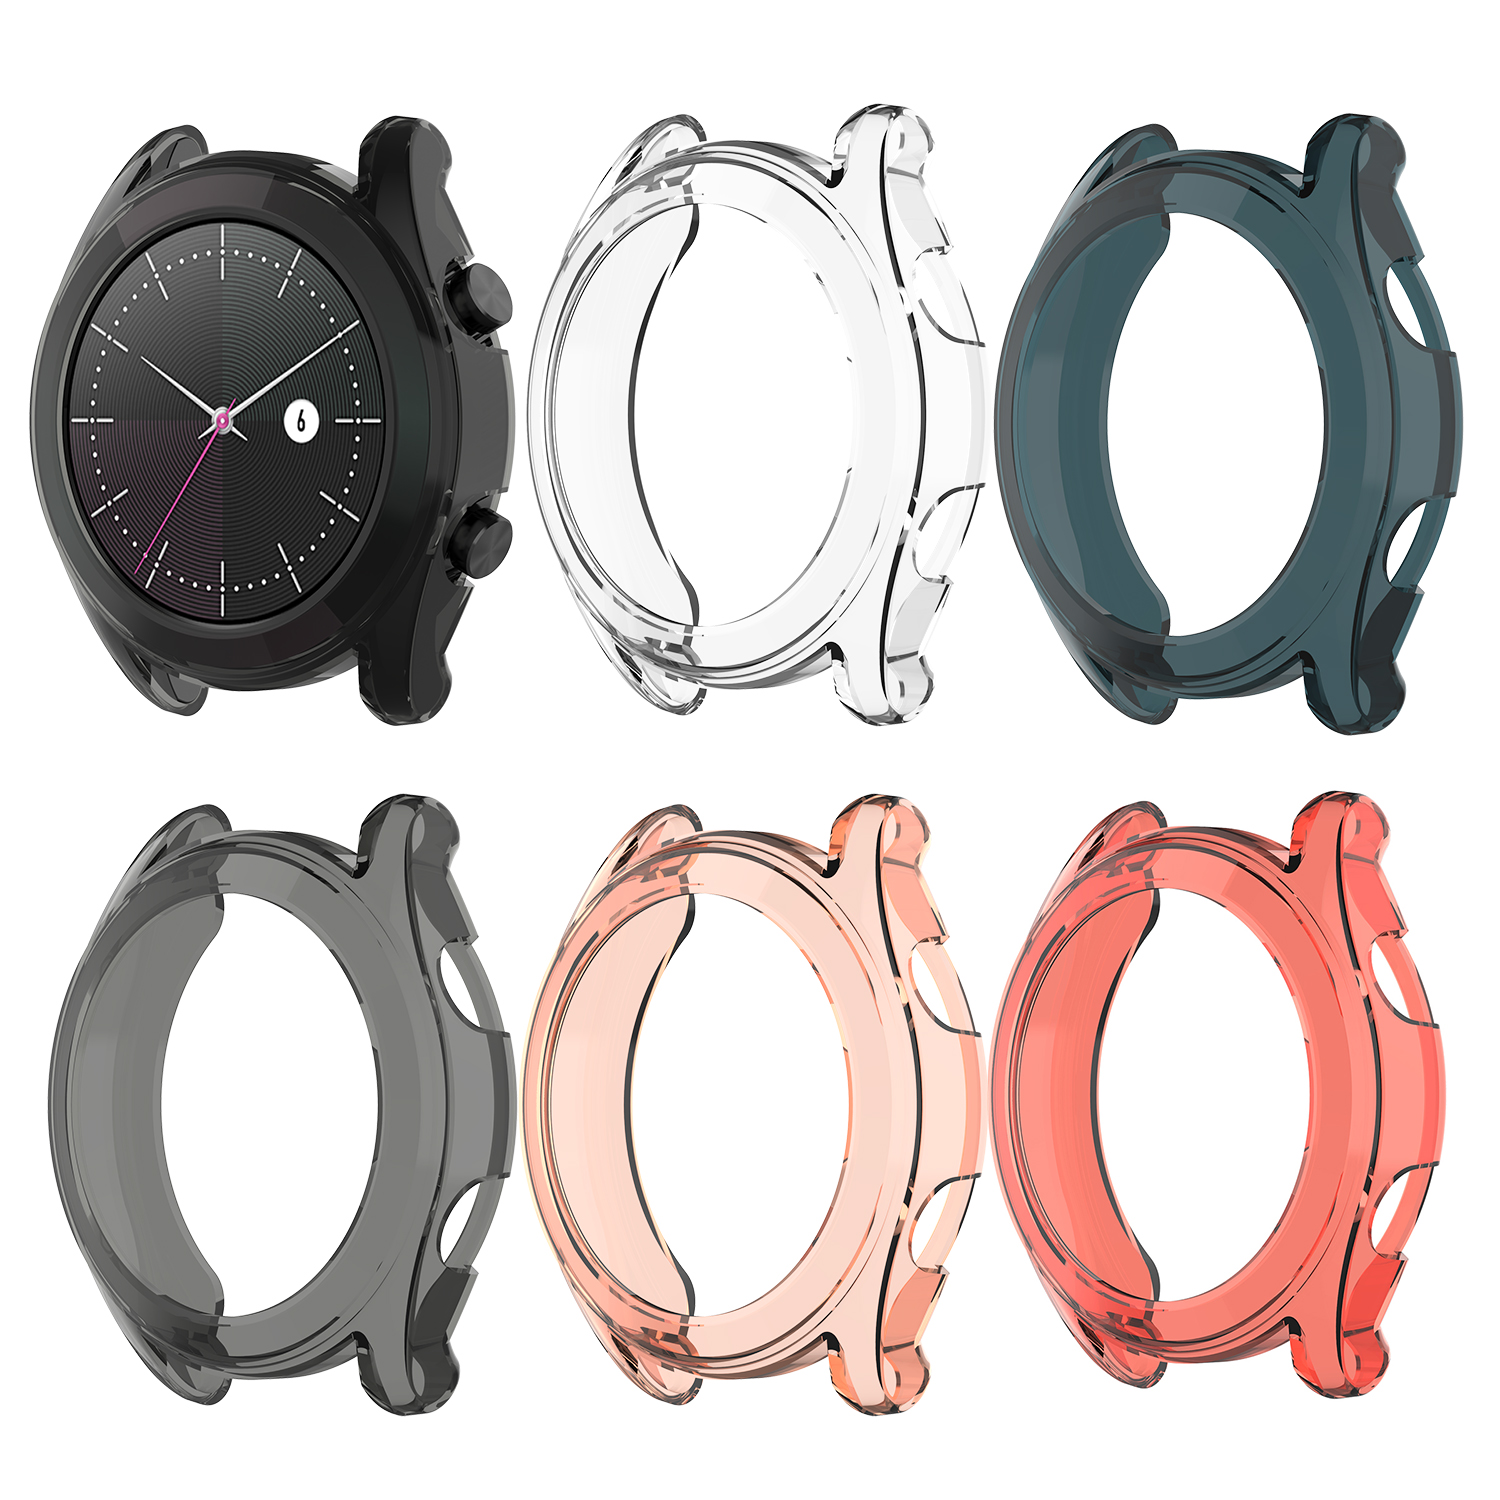 

Bakeey Colorful TPU Прозрачный протектор для часов Чехол для Huawei 46мм / 42мм наручных часов GT